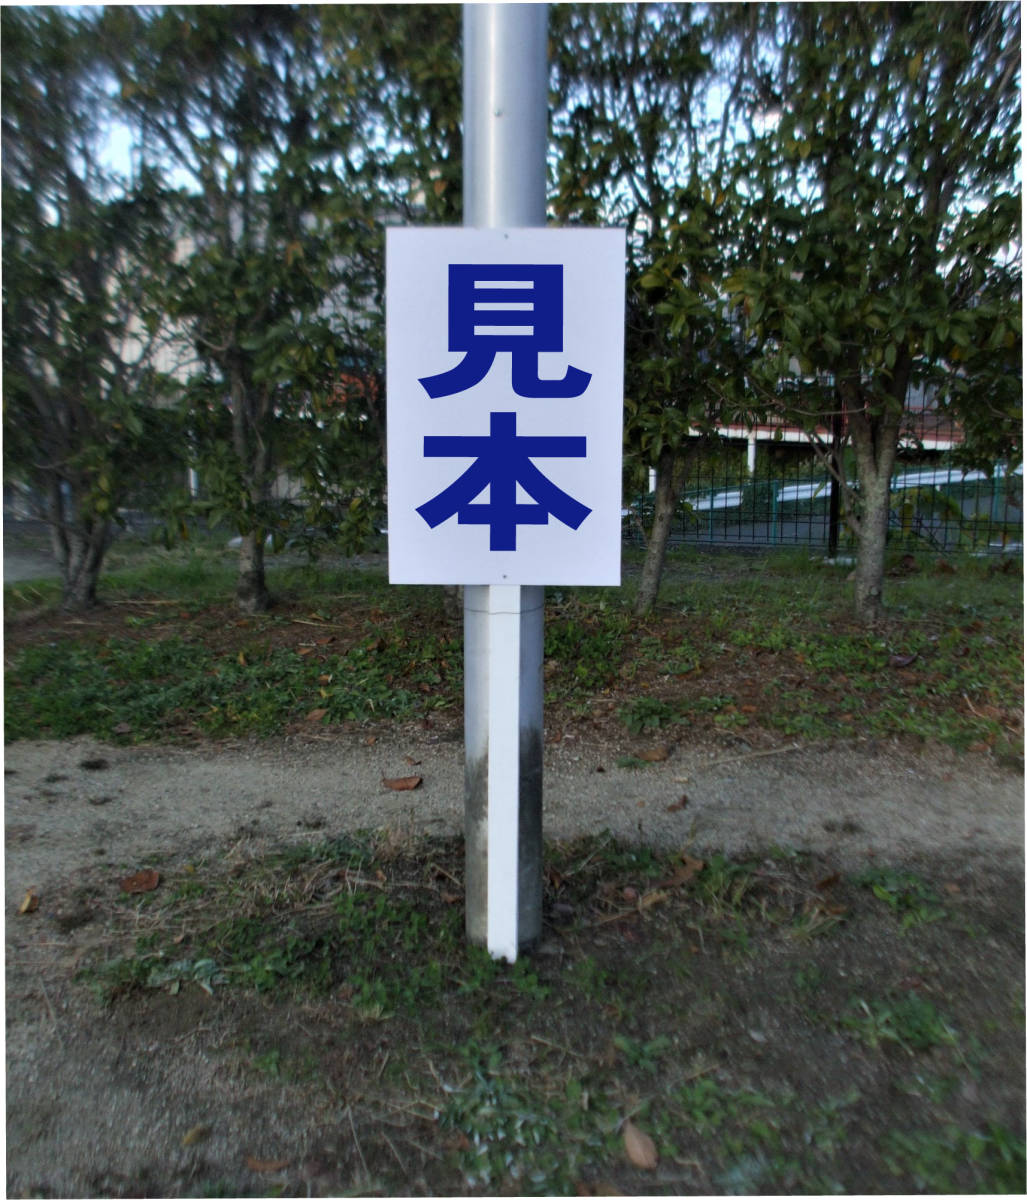  простой .. табличка [ правый . запрет ( синий )] парковка наружный возможно ( поверхность доска примерно H45.5cmxW30cm) общая длина 1m